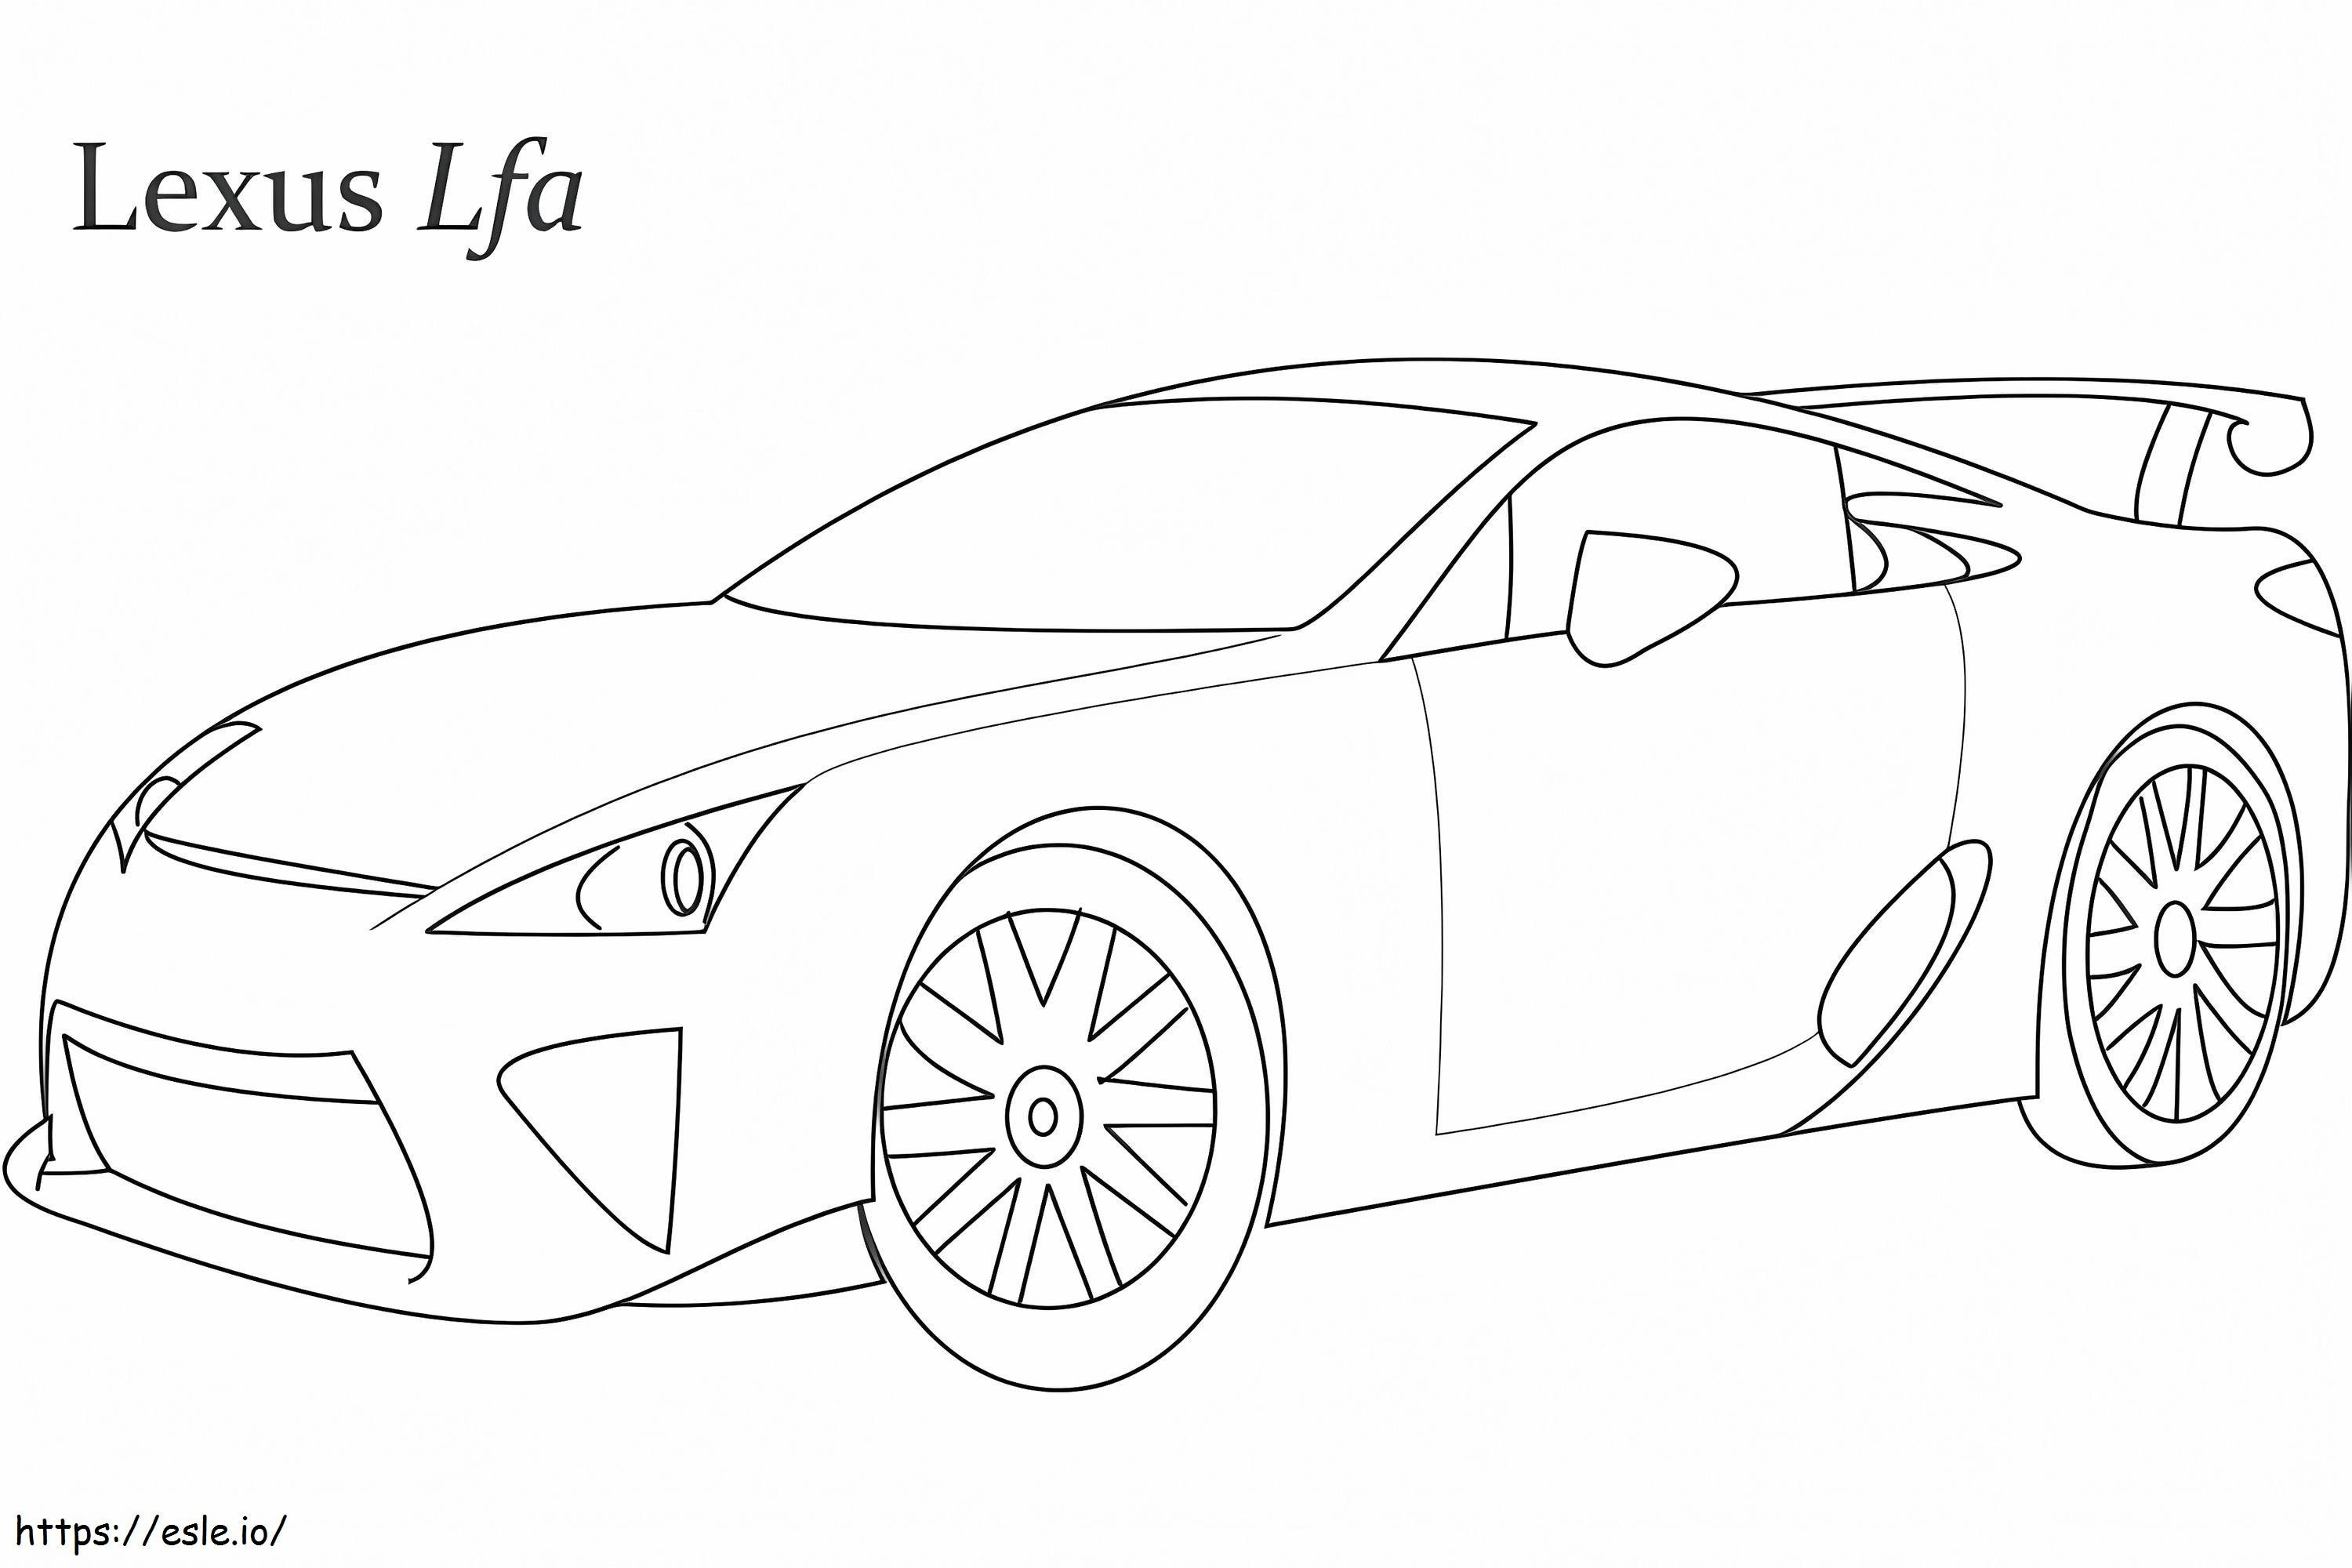 Lexus Lfa-Rennwagen ausmalbilder